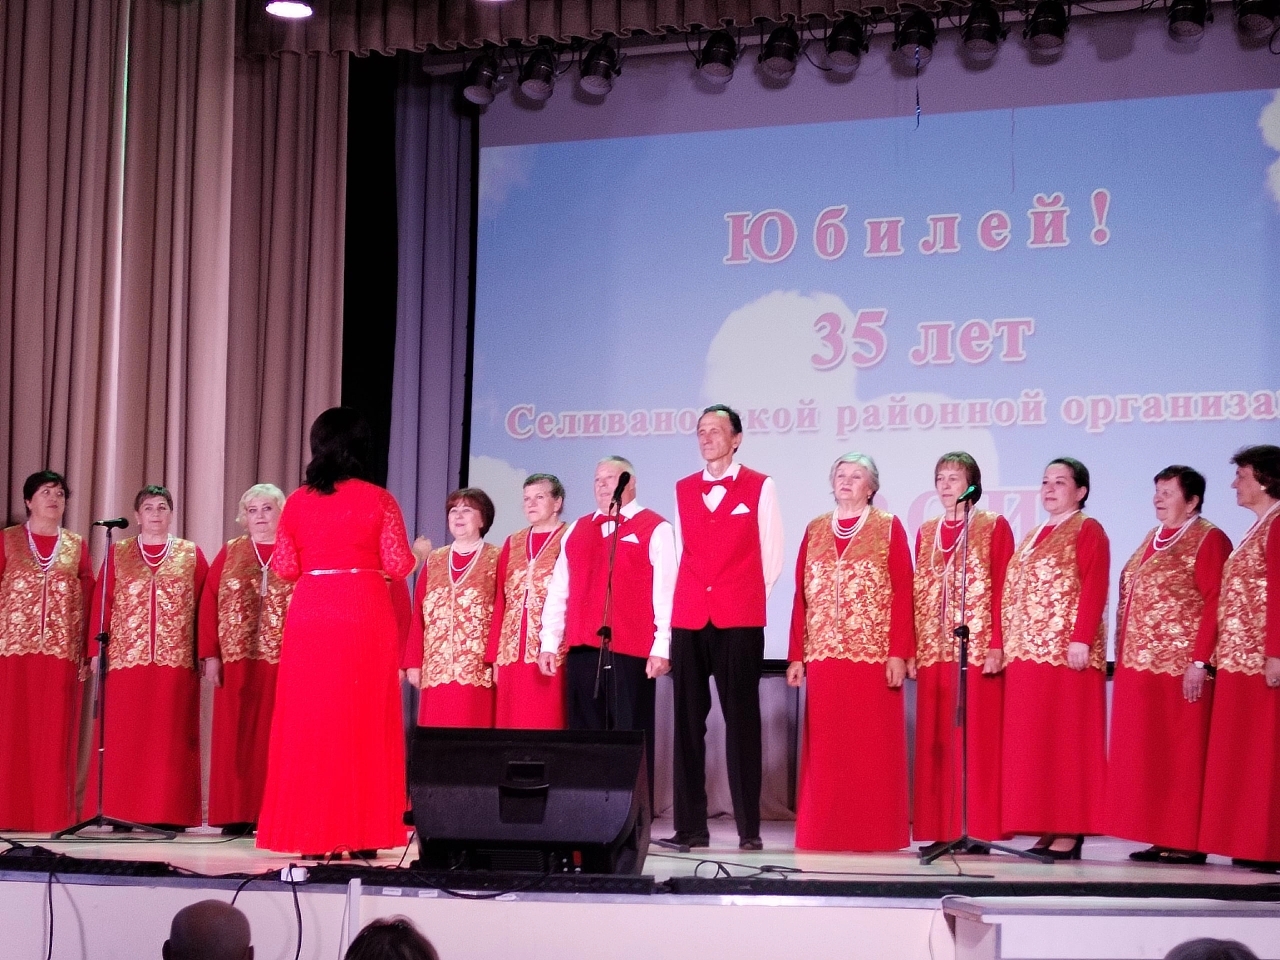 7 июня Селивановская районная организация ВОИ отмечала свое 35-летие!